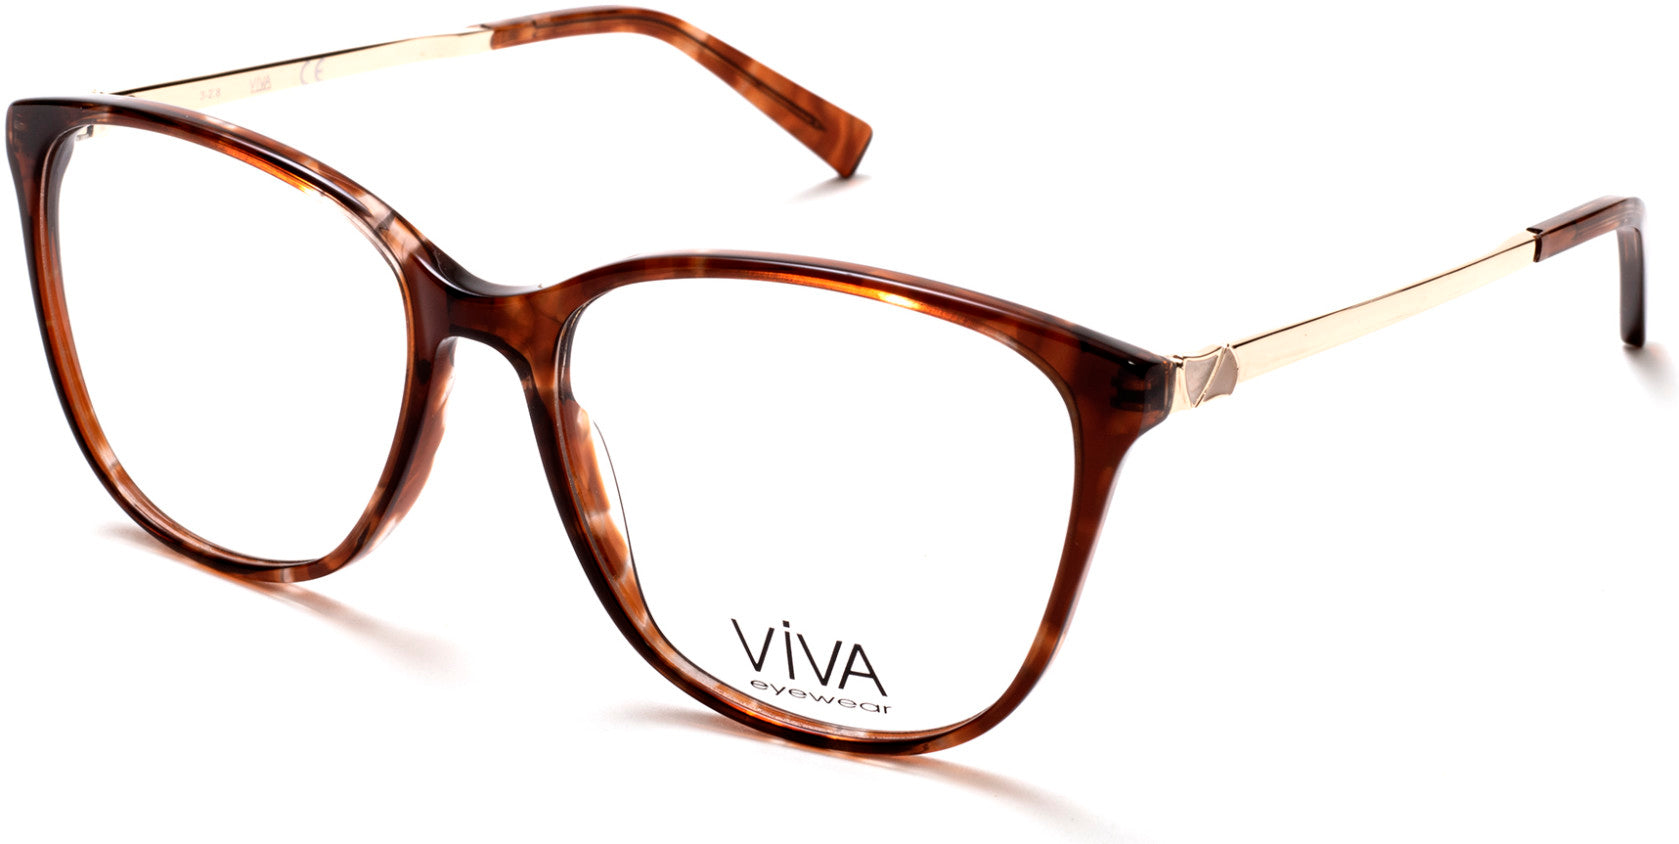 Viva VV4516 Geometric Eyeglasses 047-047 - Light Brown